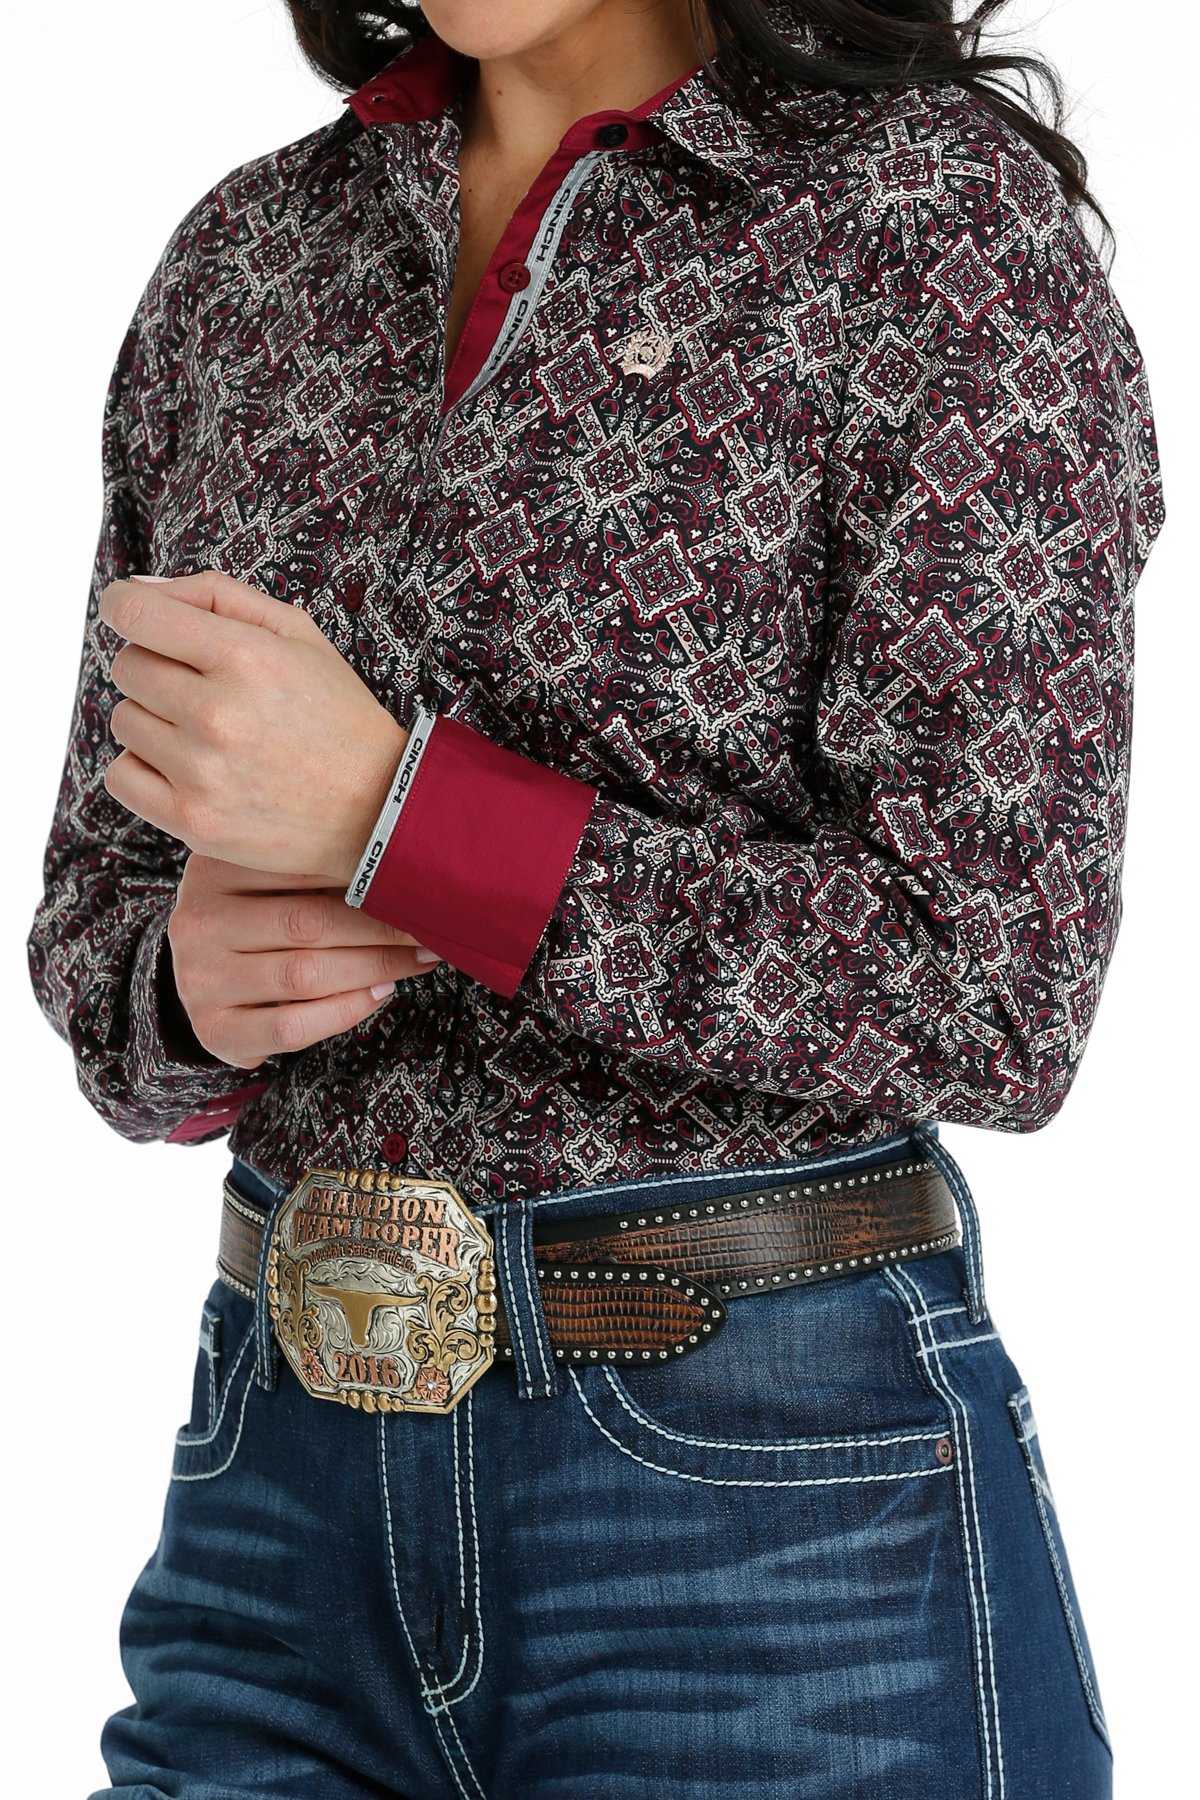 chemise équitation western femme cinch motif bordeaux